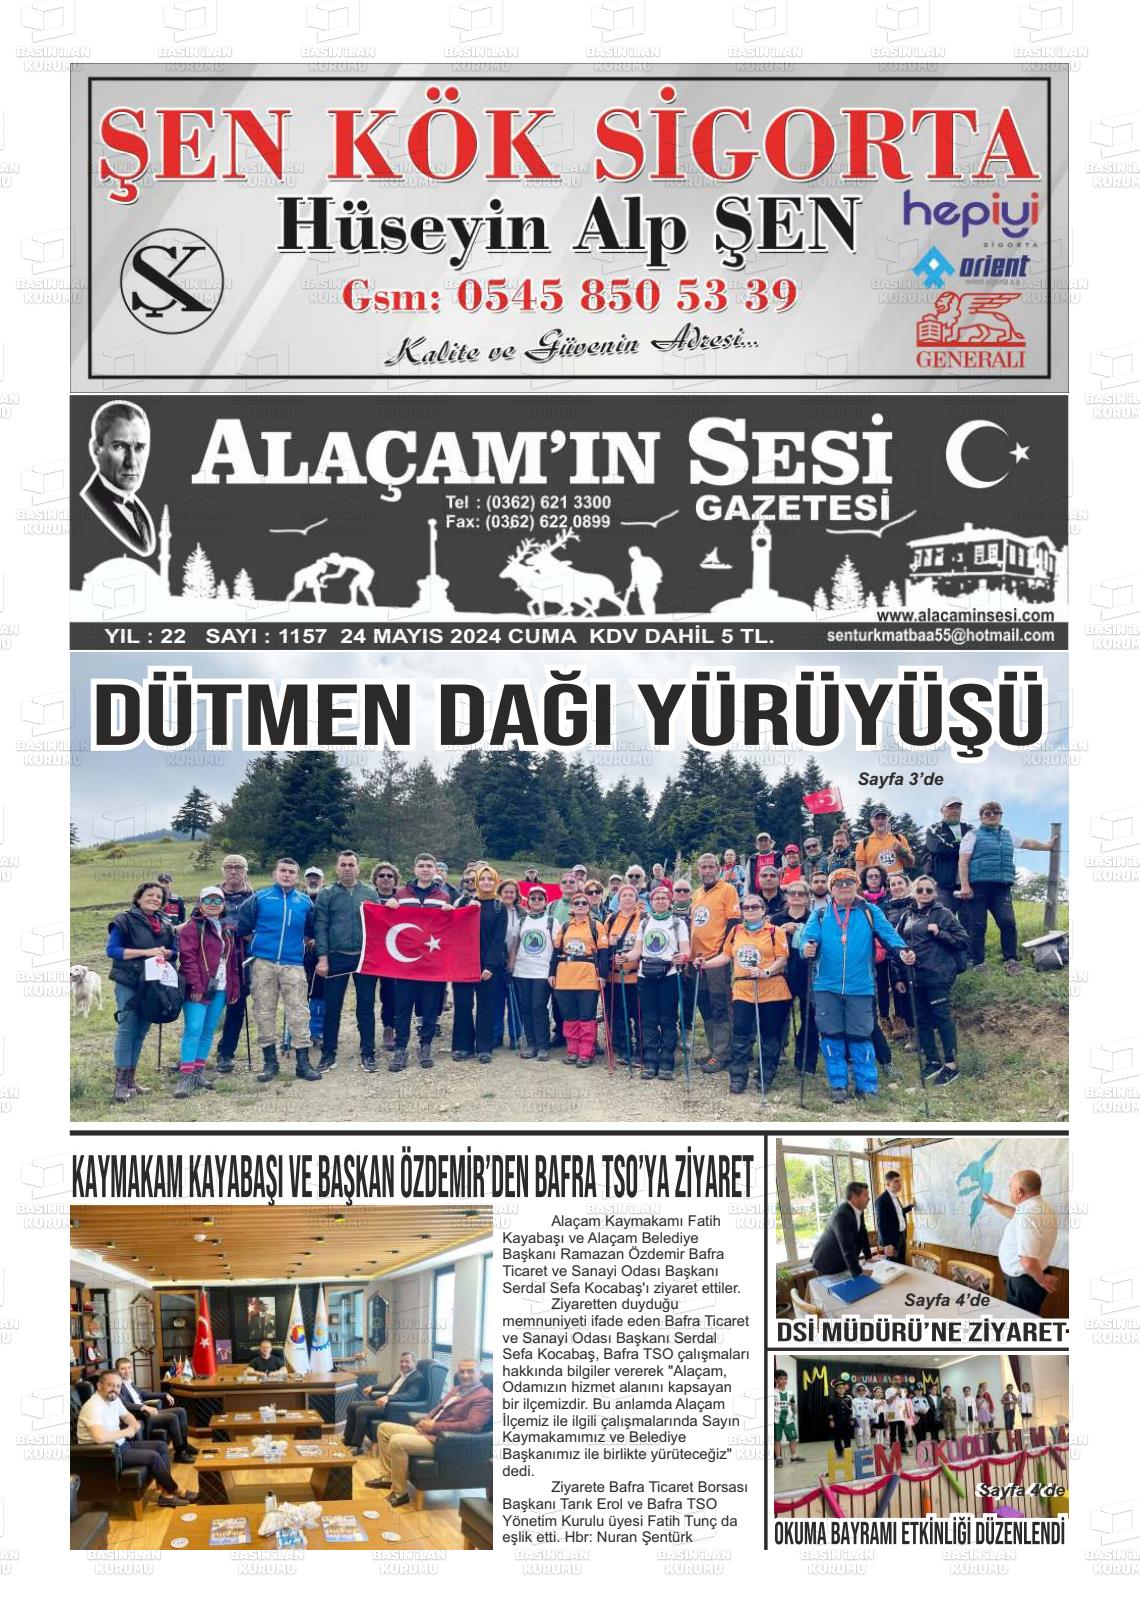 ALAÇAM'IN SESİ Gazetesi